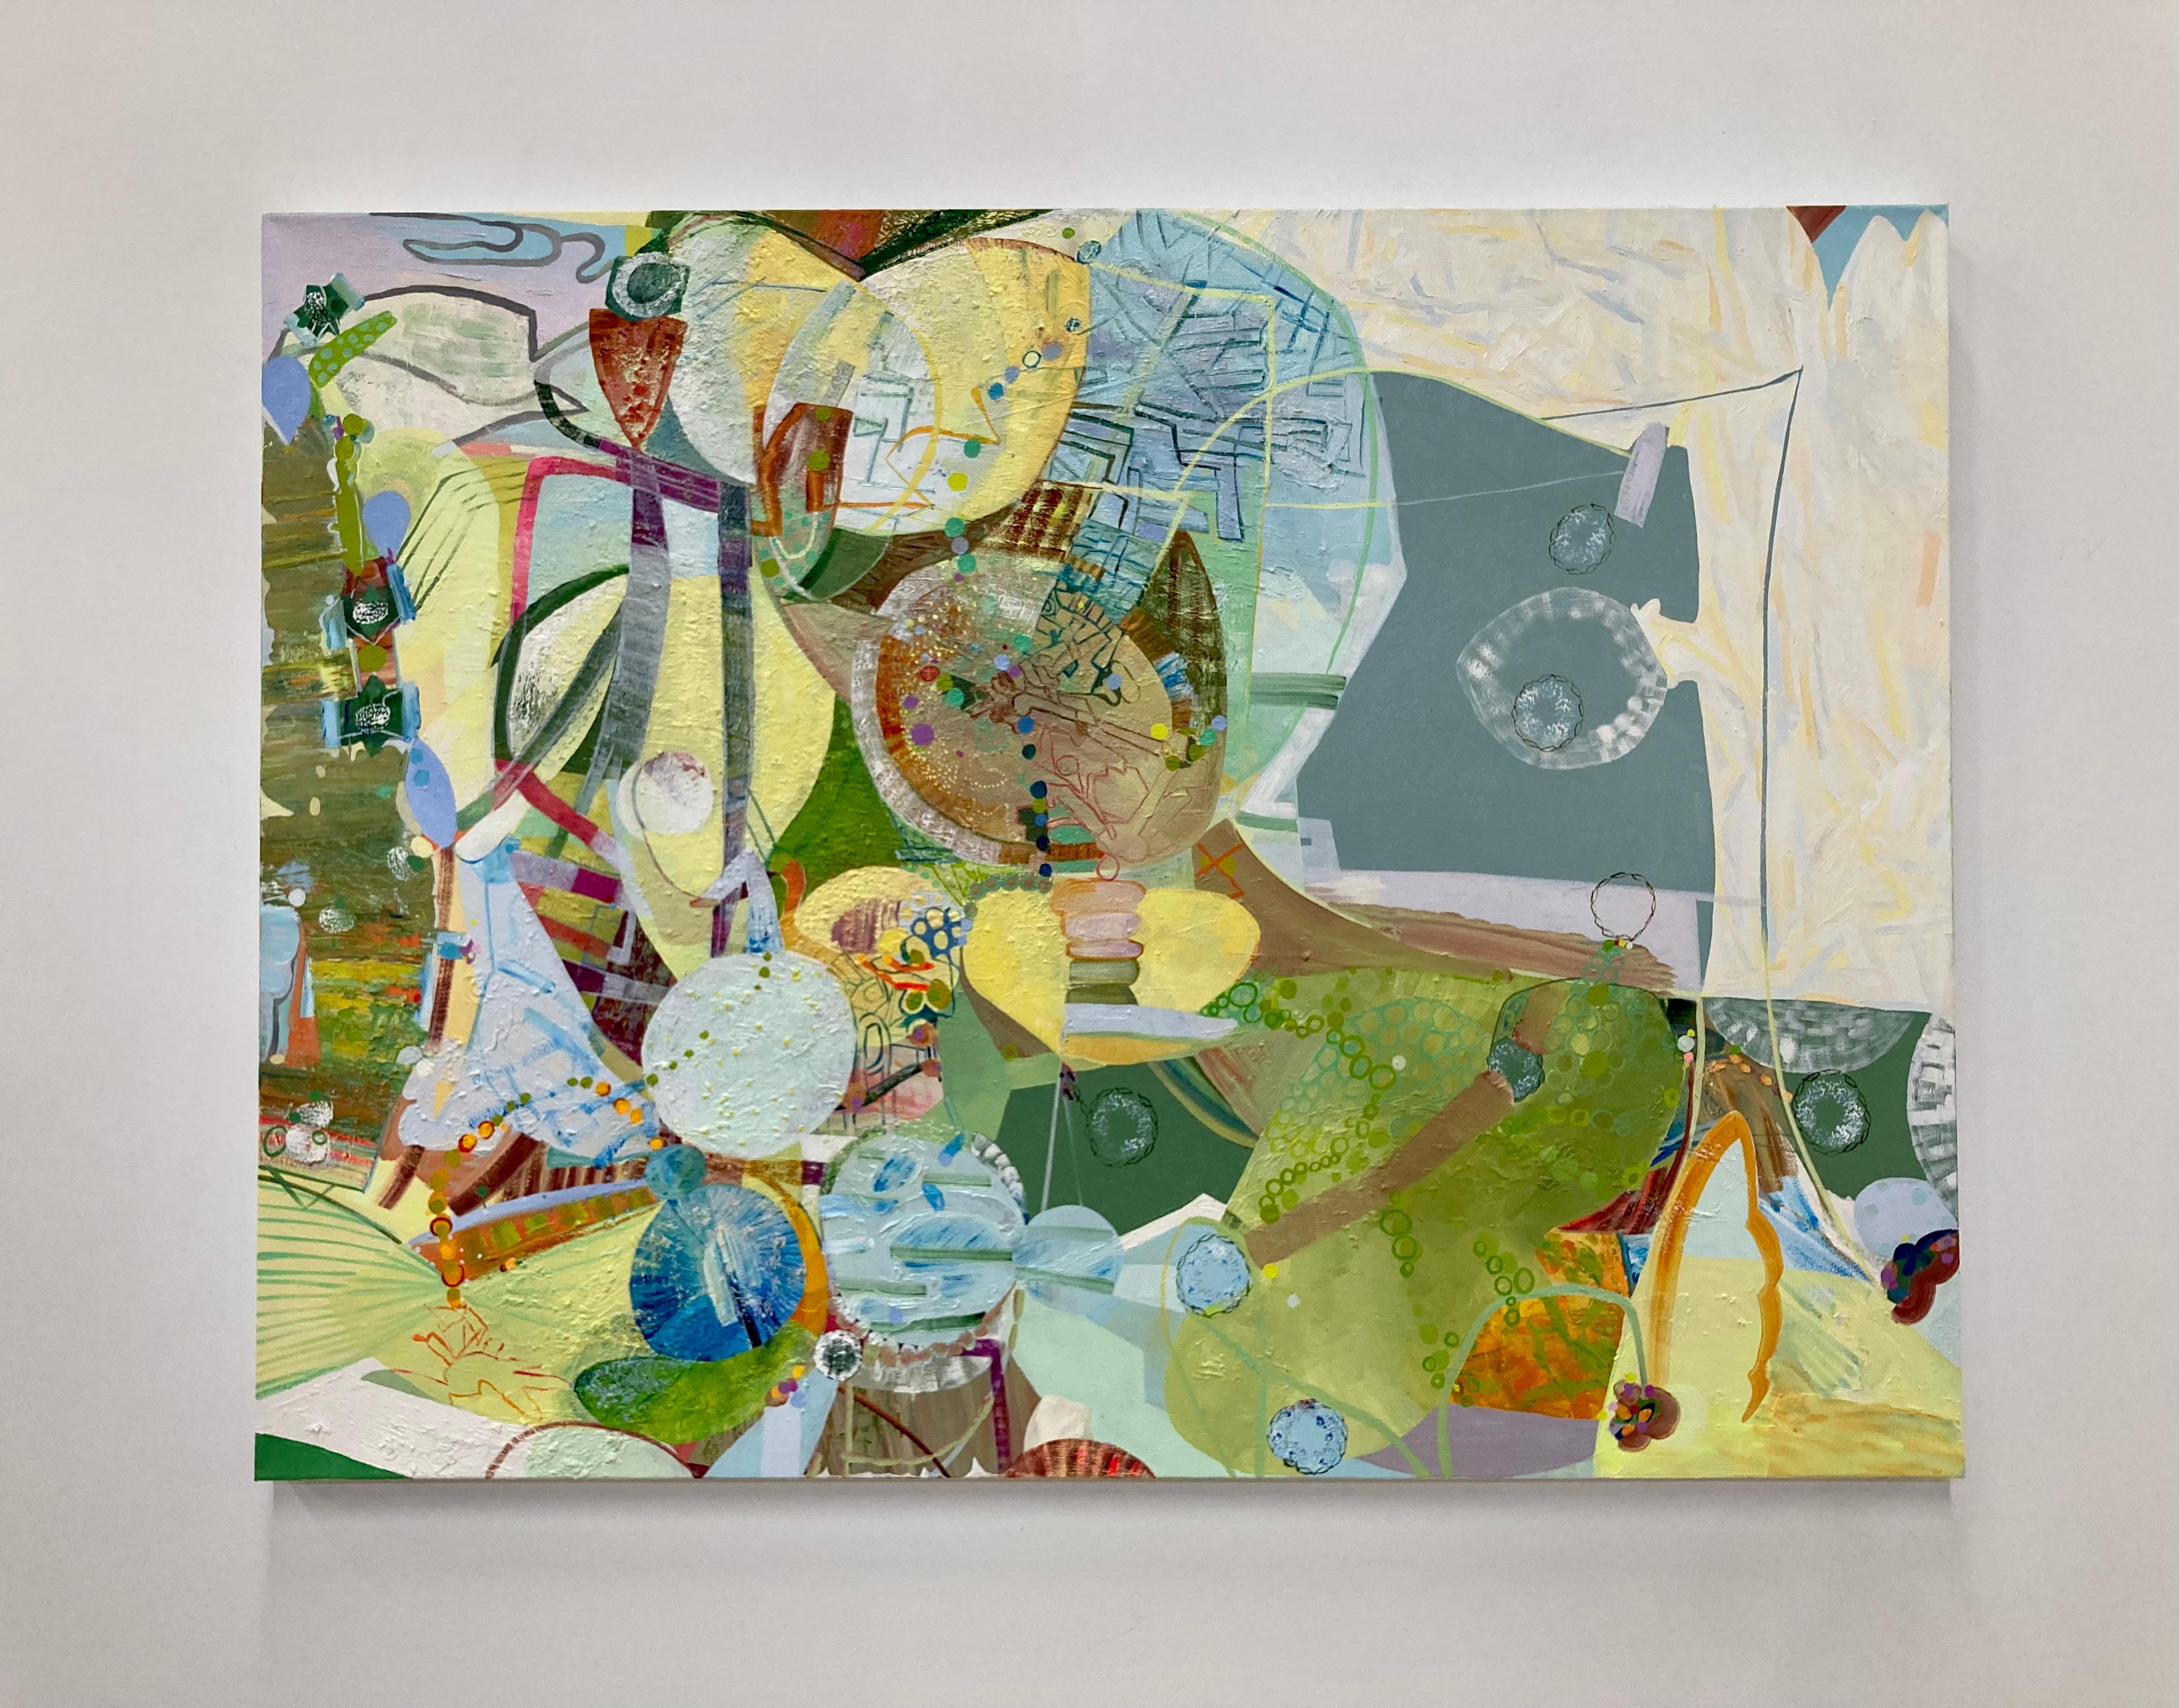 Klee, Grasgrün, Gelb, Elfenbein, Ocker, Blau, Rosa Abstrakte Muster, Kreise – Painting von Josette Urso